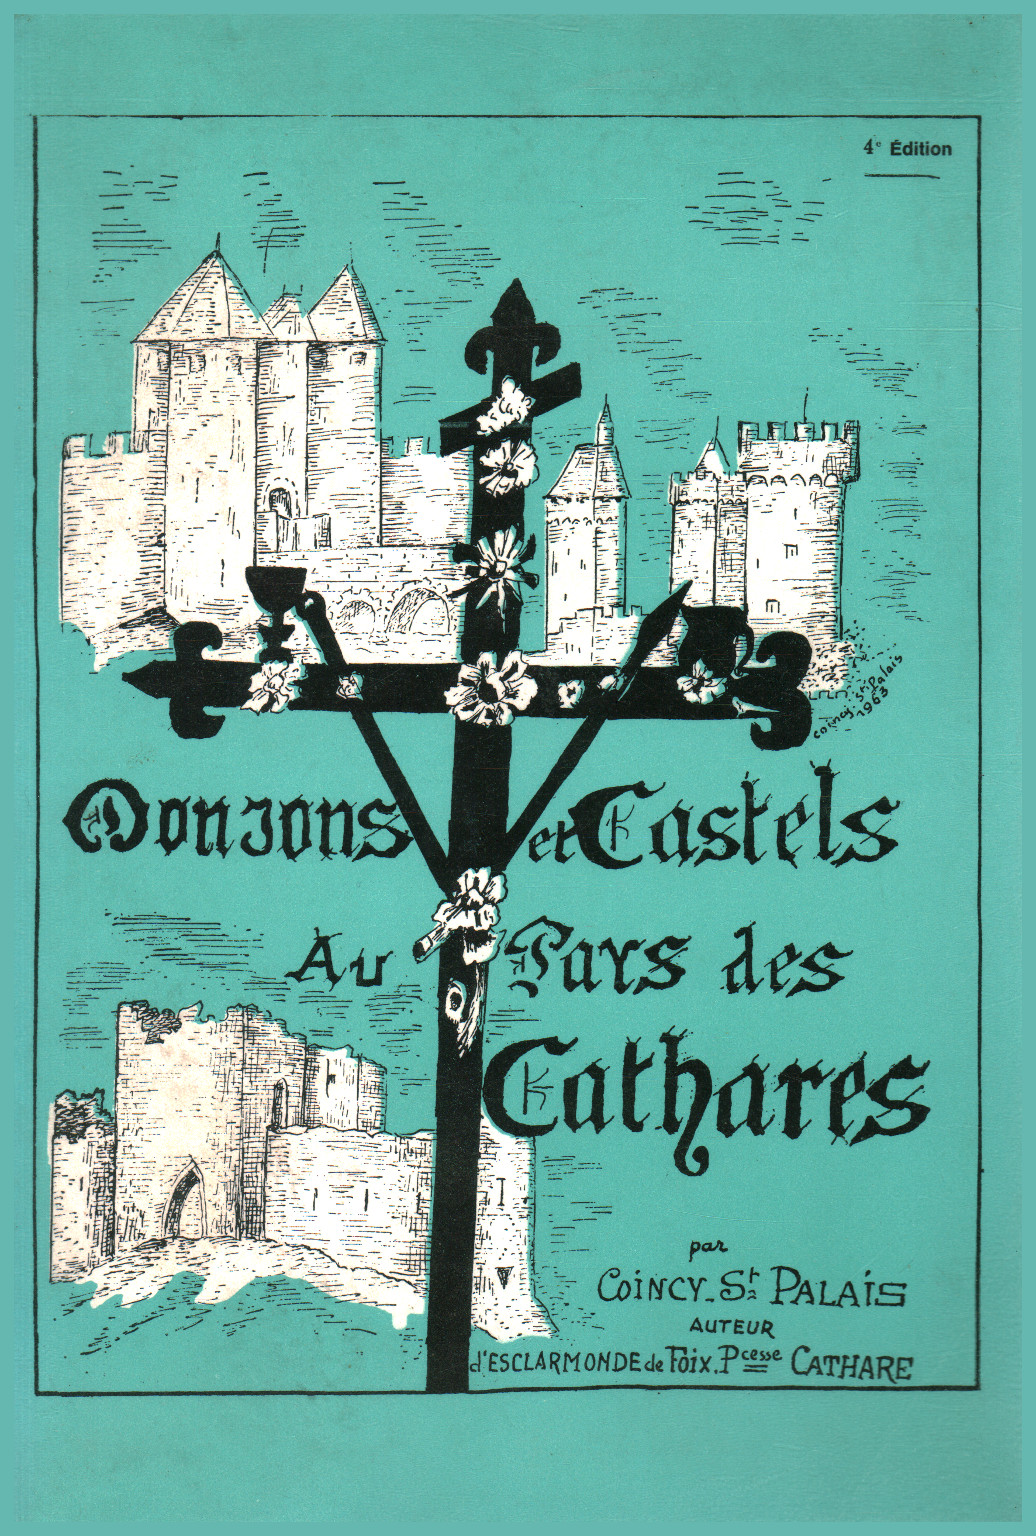 Donjons et castels, au pays des cathares, s.un.